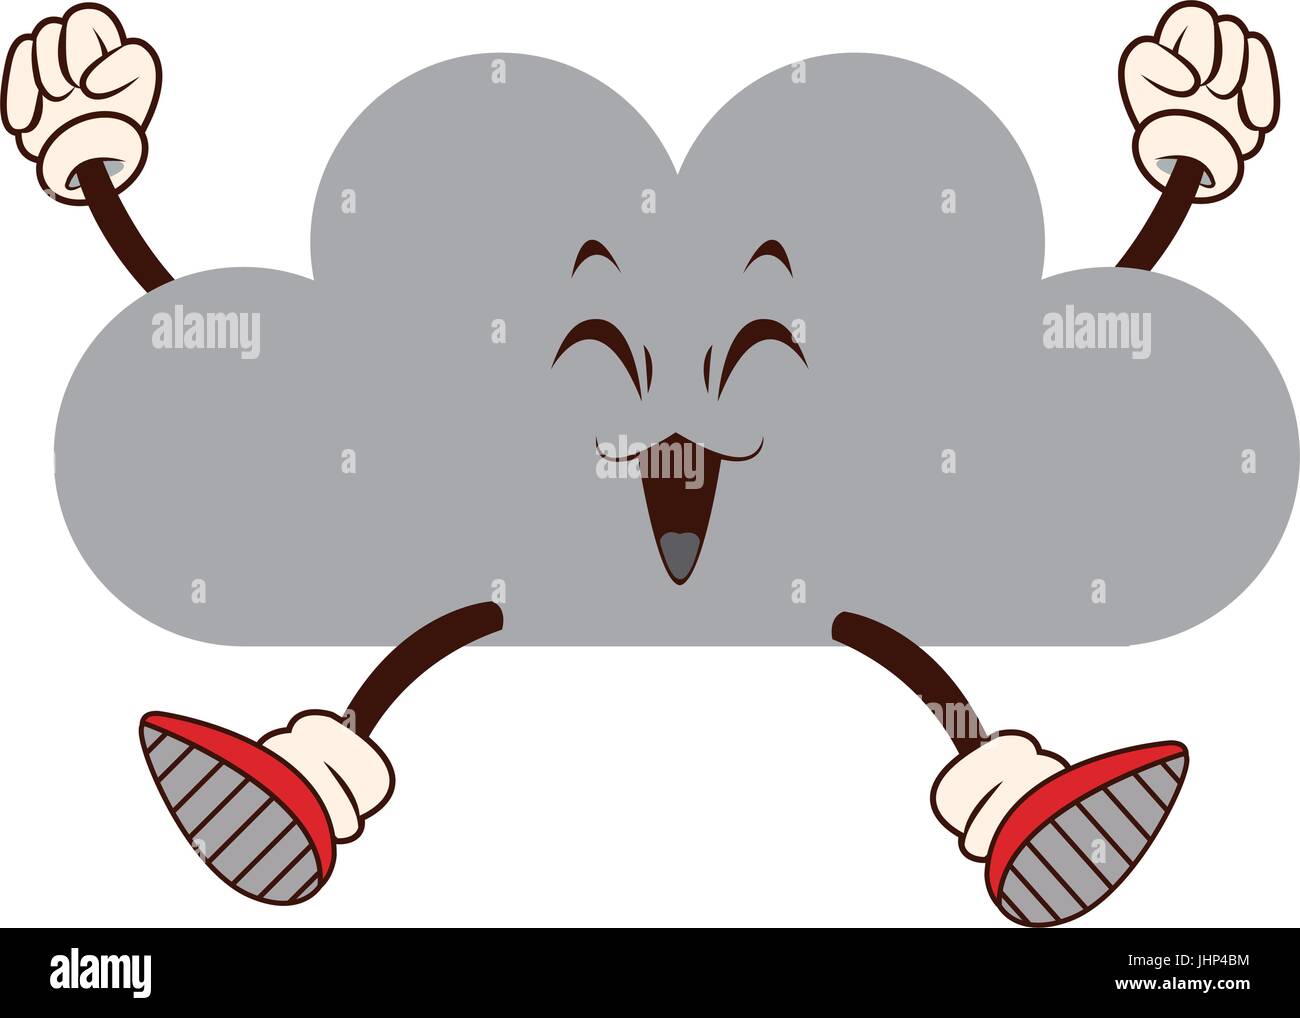 kawaii fun cloud weather climate cartoon Stock Vector Image & Art - Alamy